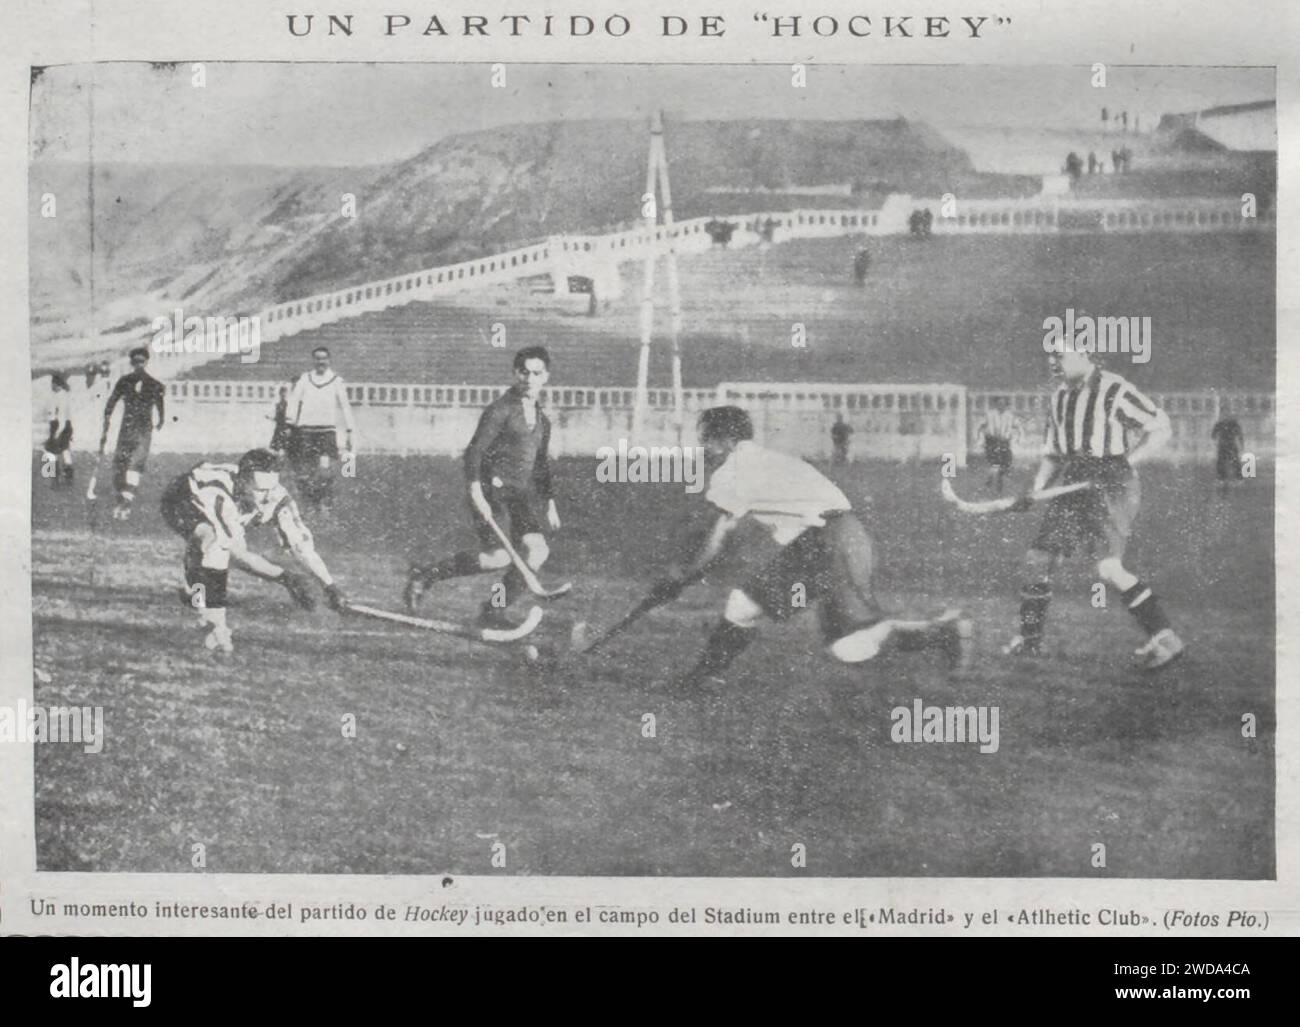 1923-12, La Ilvstración Vniversal, Un momento interesante del partido de hockey jugado en el campo del Stadium entre el Madrid y el Atlhetic Club, Pío. Stock Photo